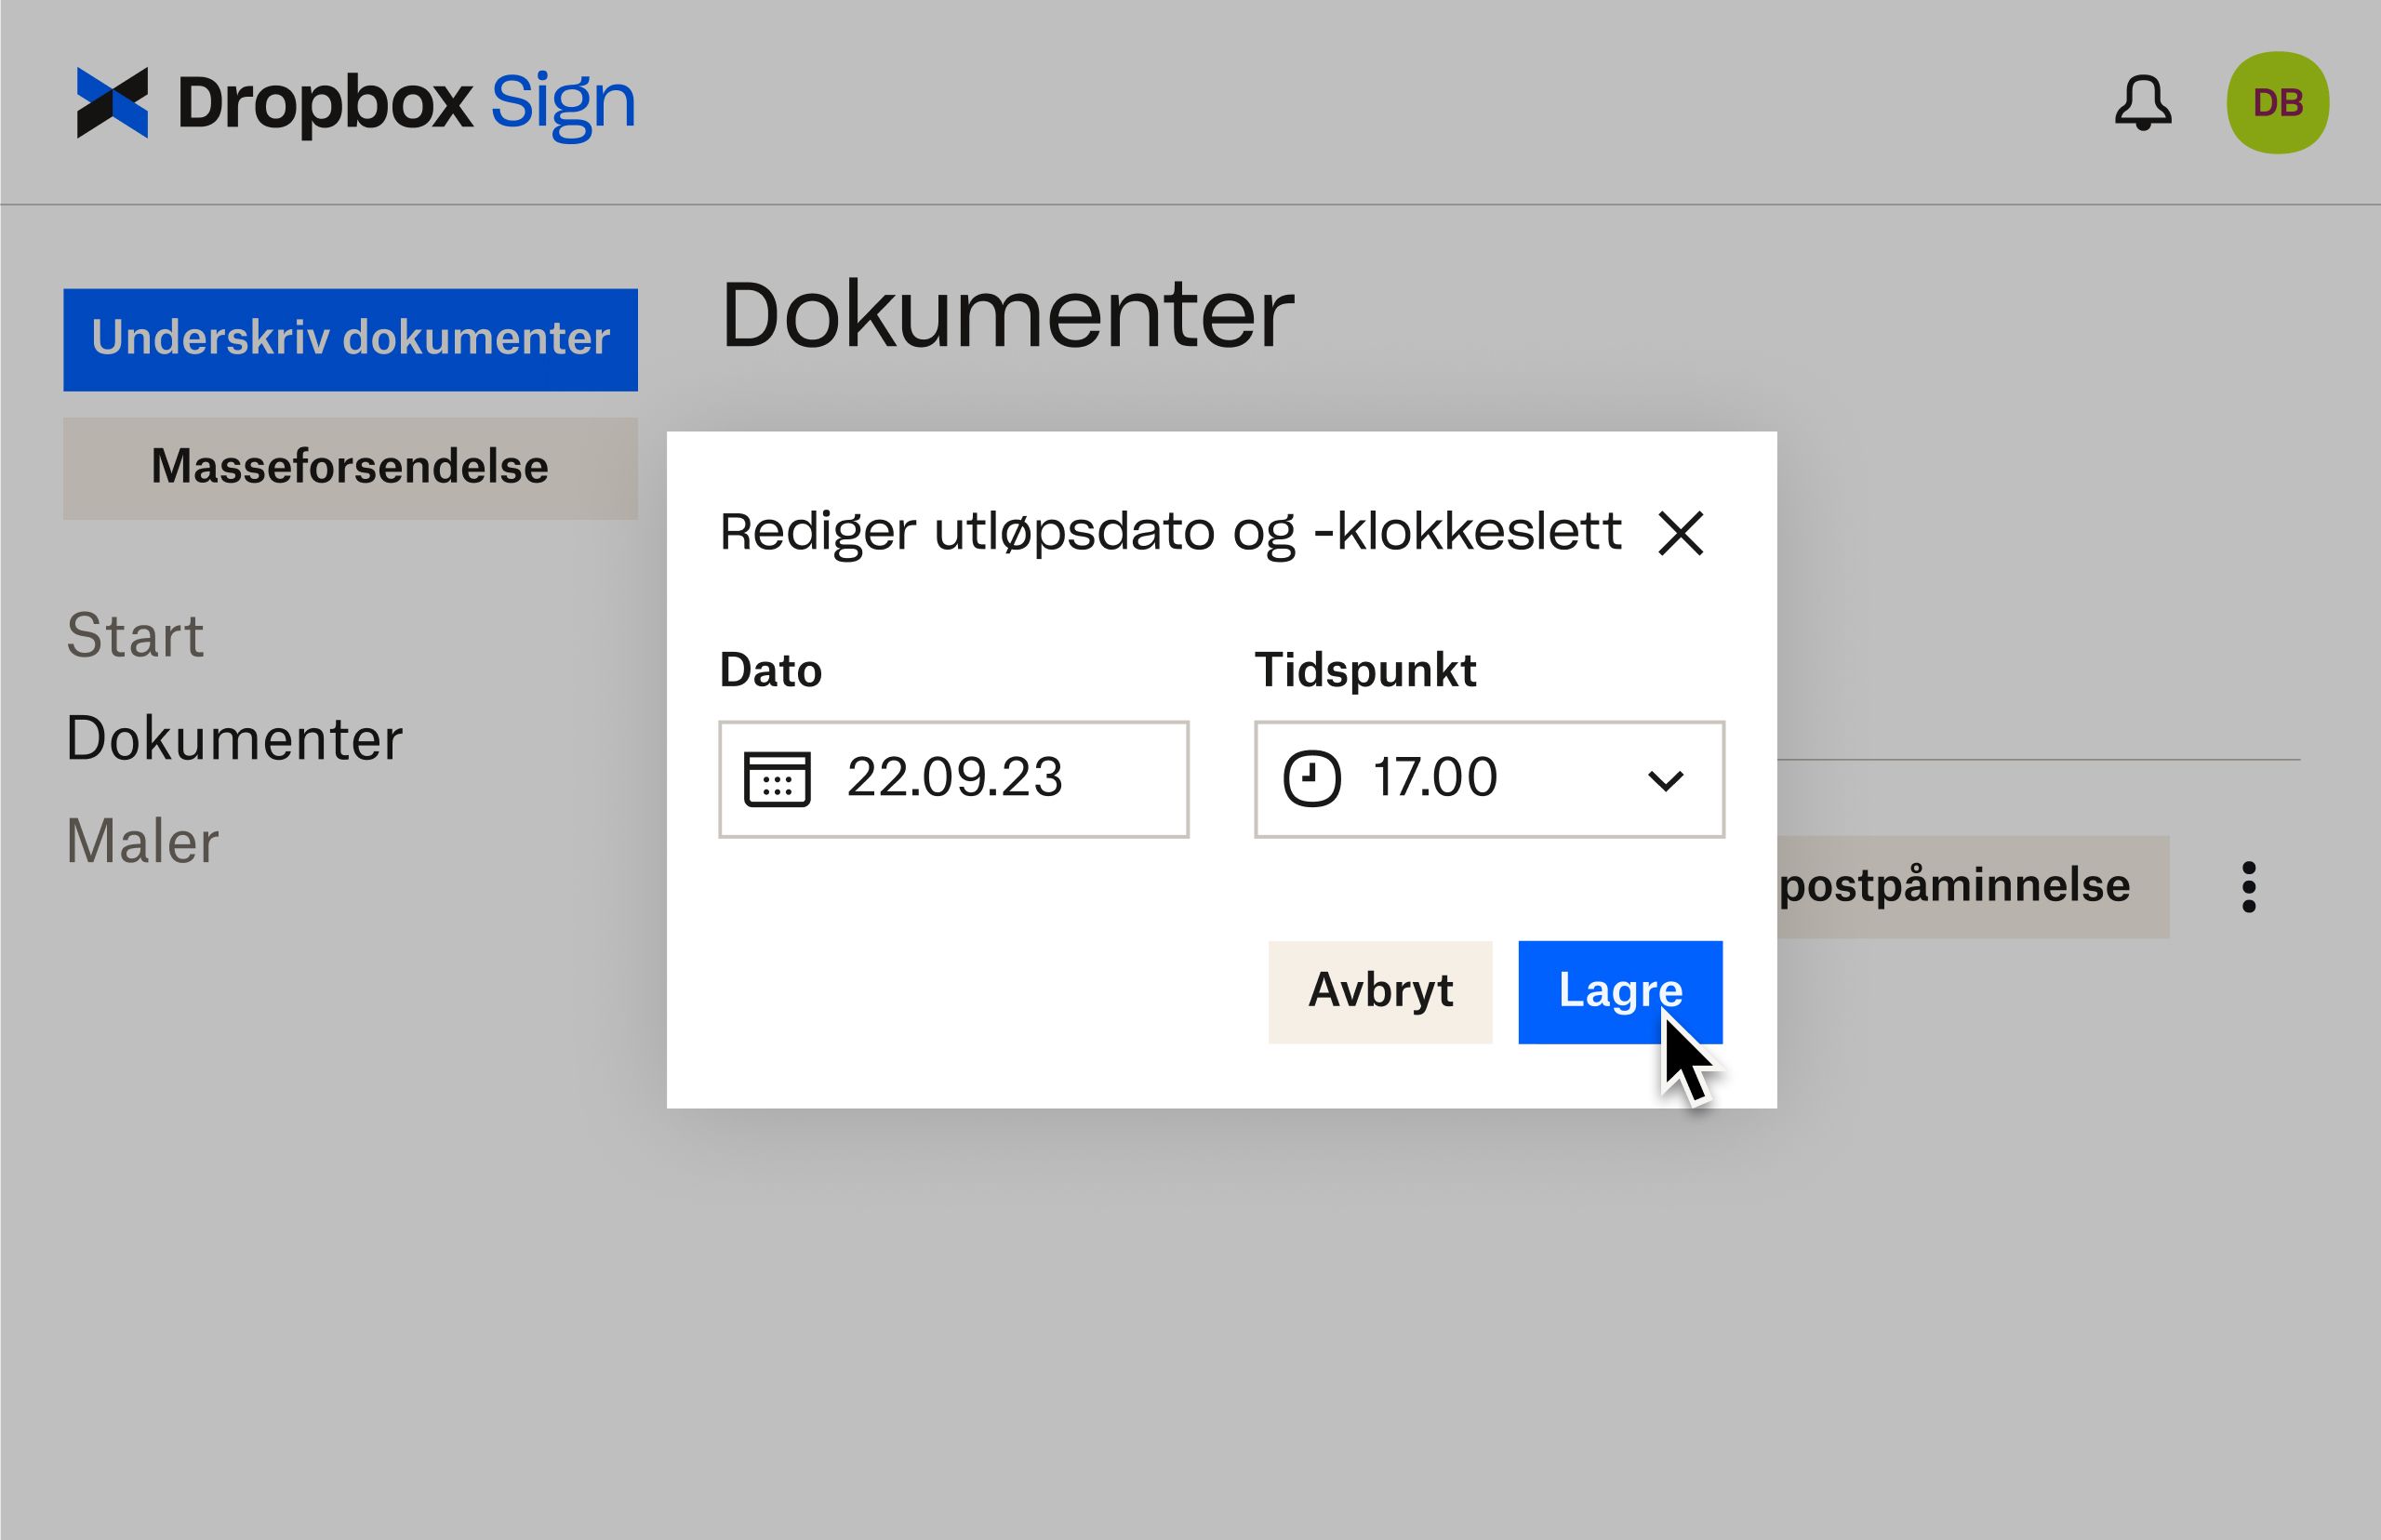 Dropbox Sign-brukergrensesnittet viser hvordan du kan redigere utløpsdatoer etter at et dokument sendes til signering